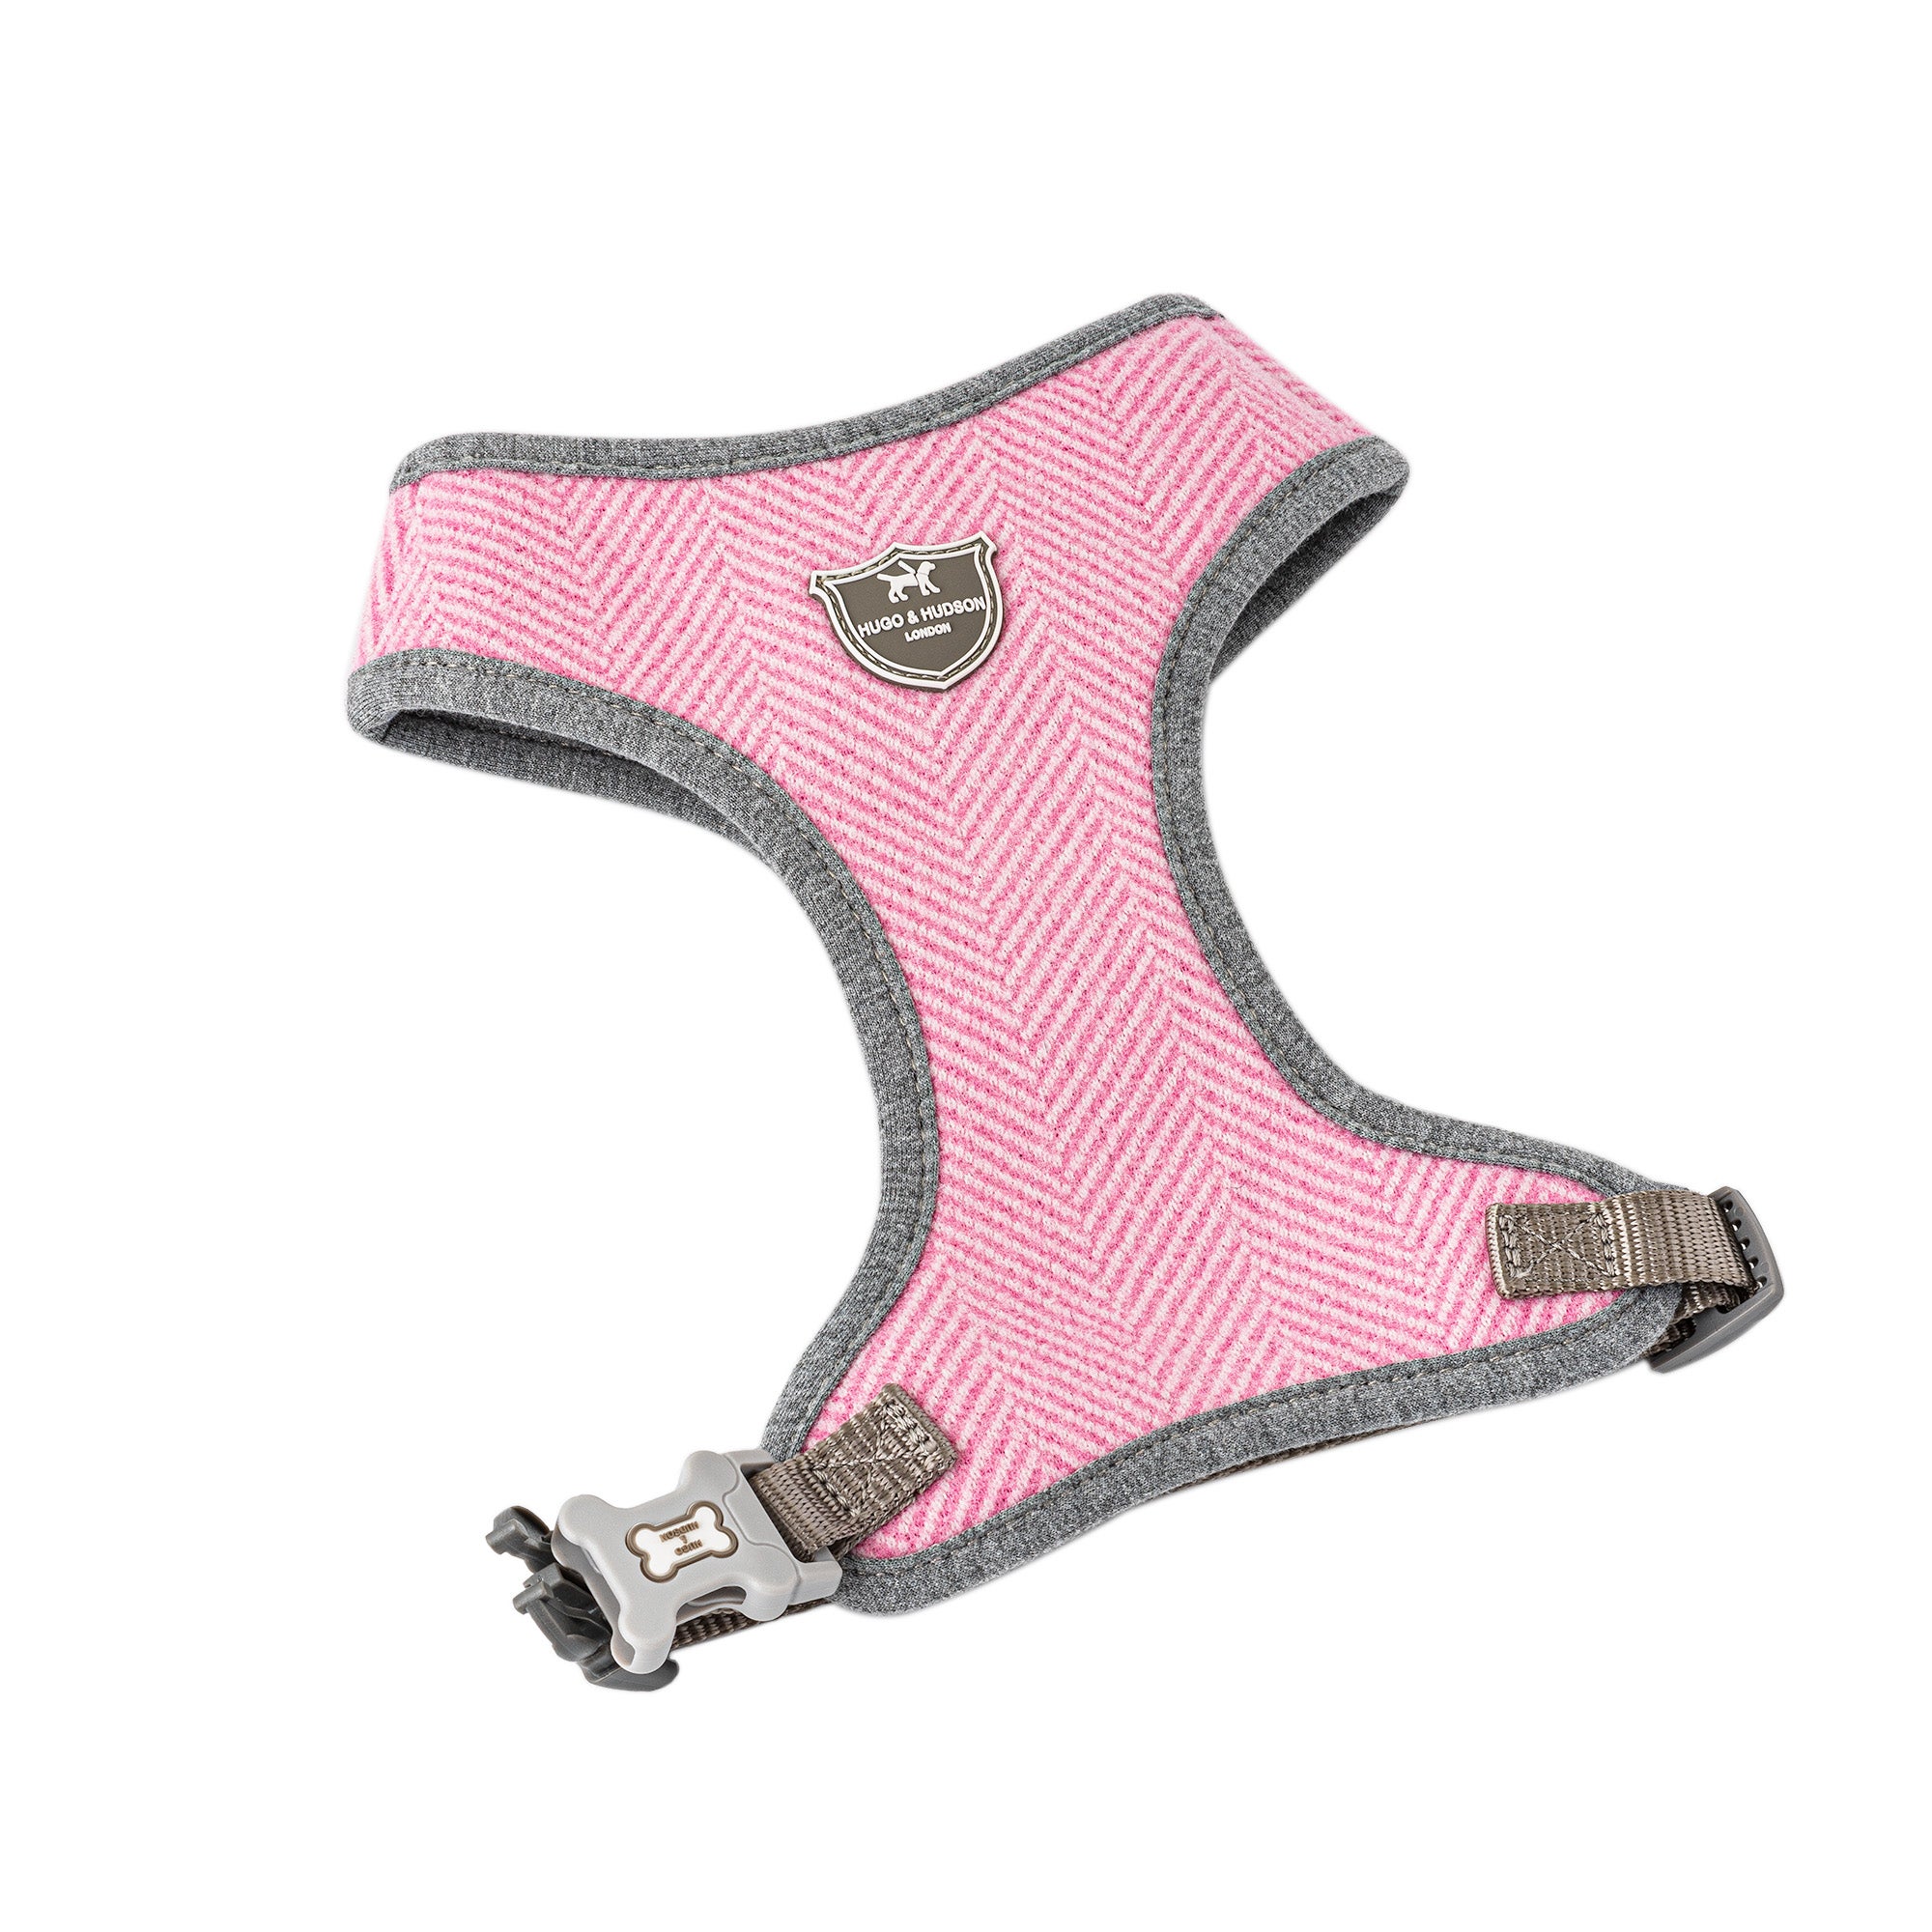 Hugo & Hudson Herringbone Tweed Dog Harness Pink